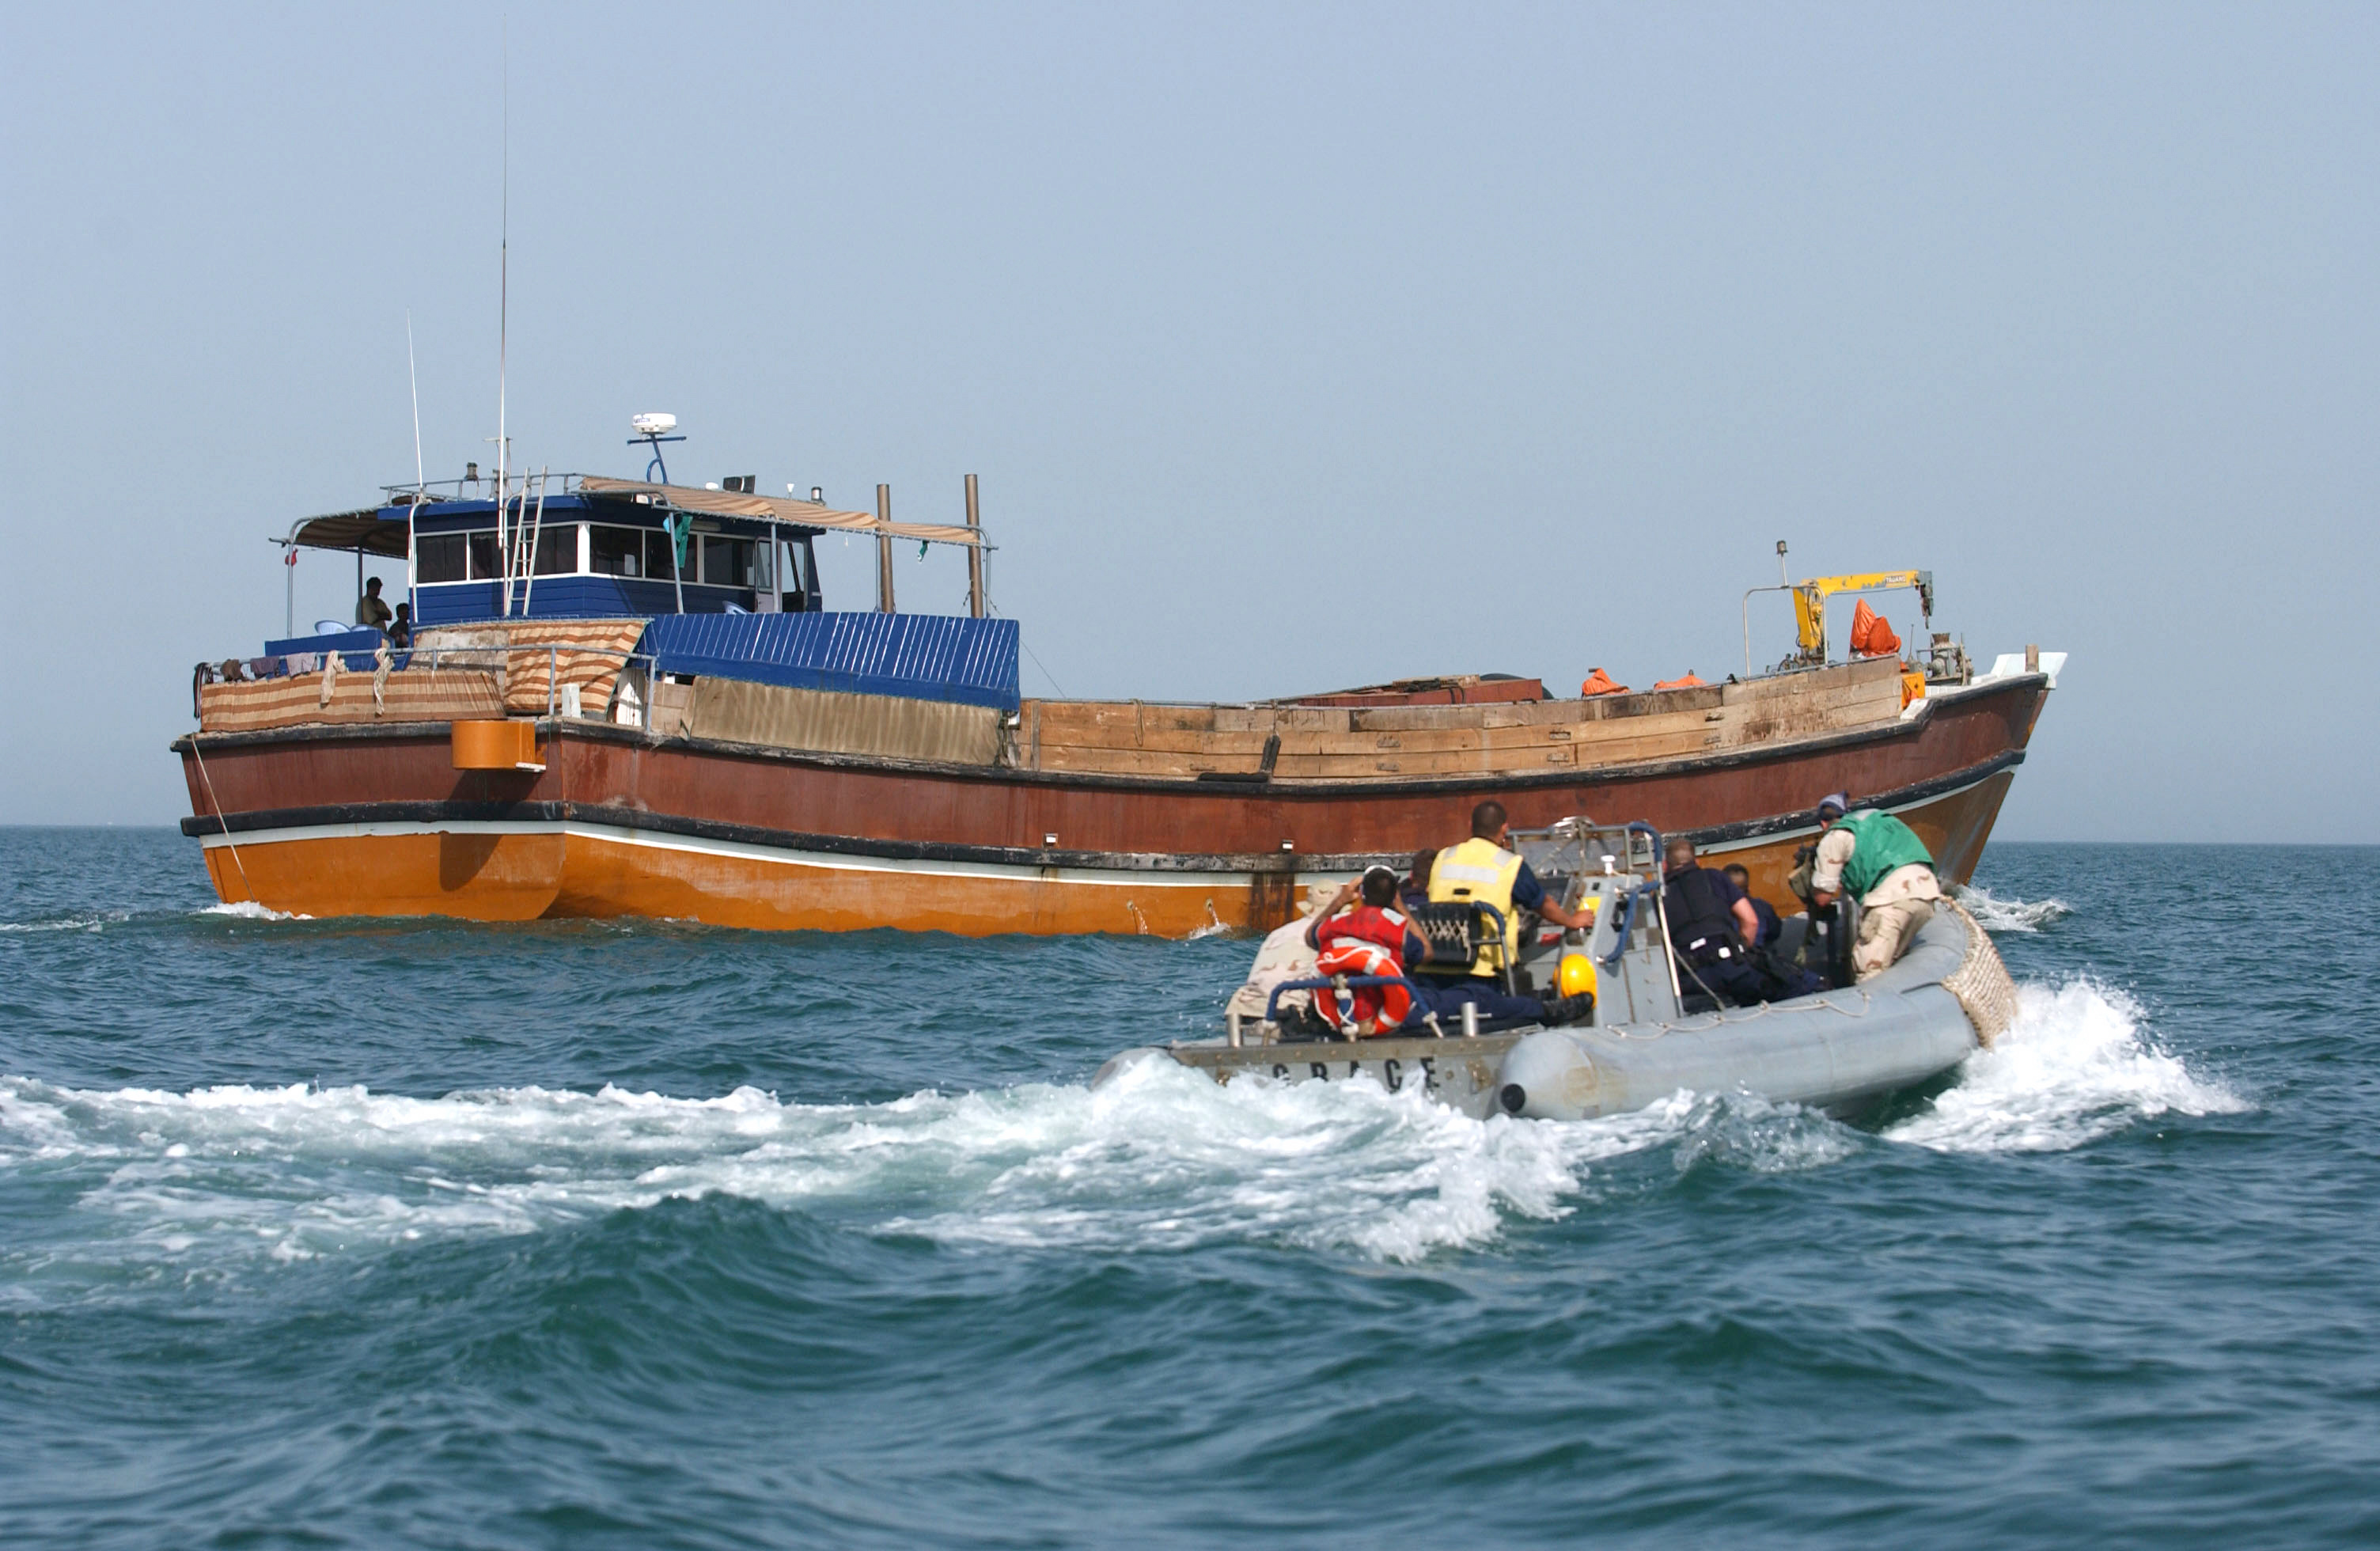 Viaggi della speranza: ancora 70 migranti salvati al largo delle coste libiche